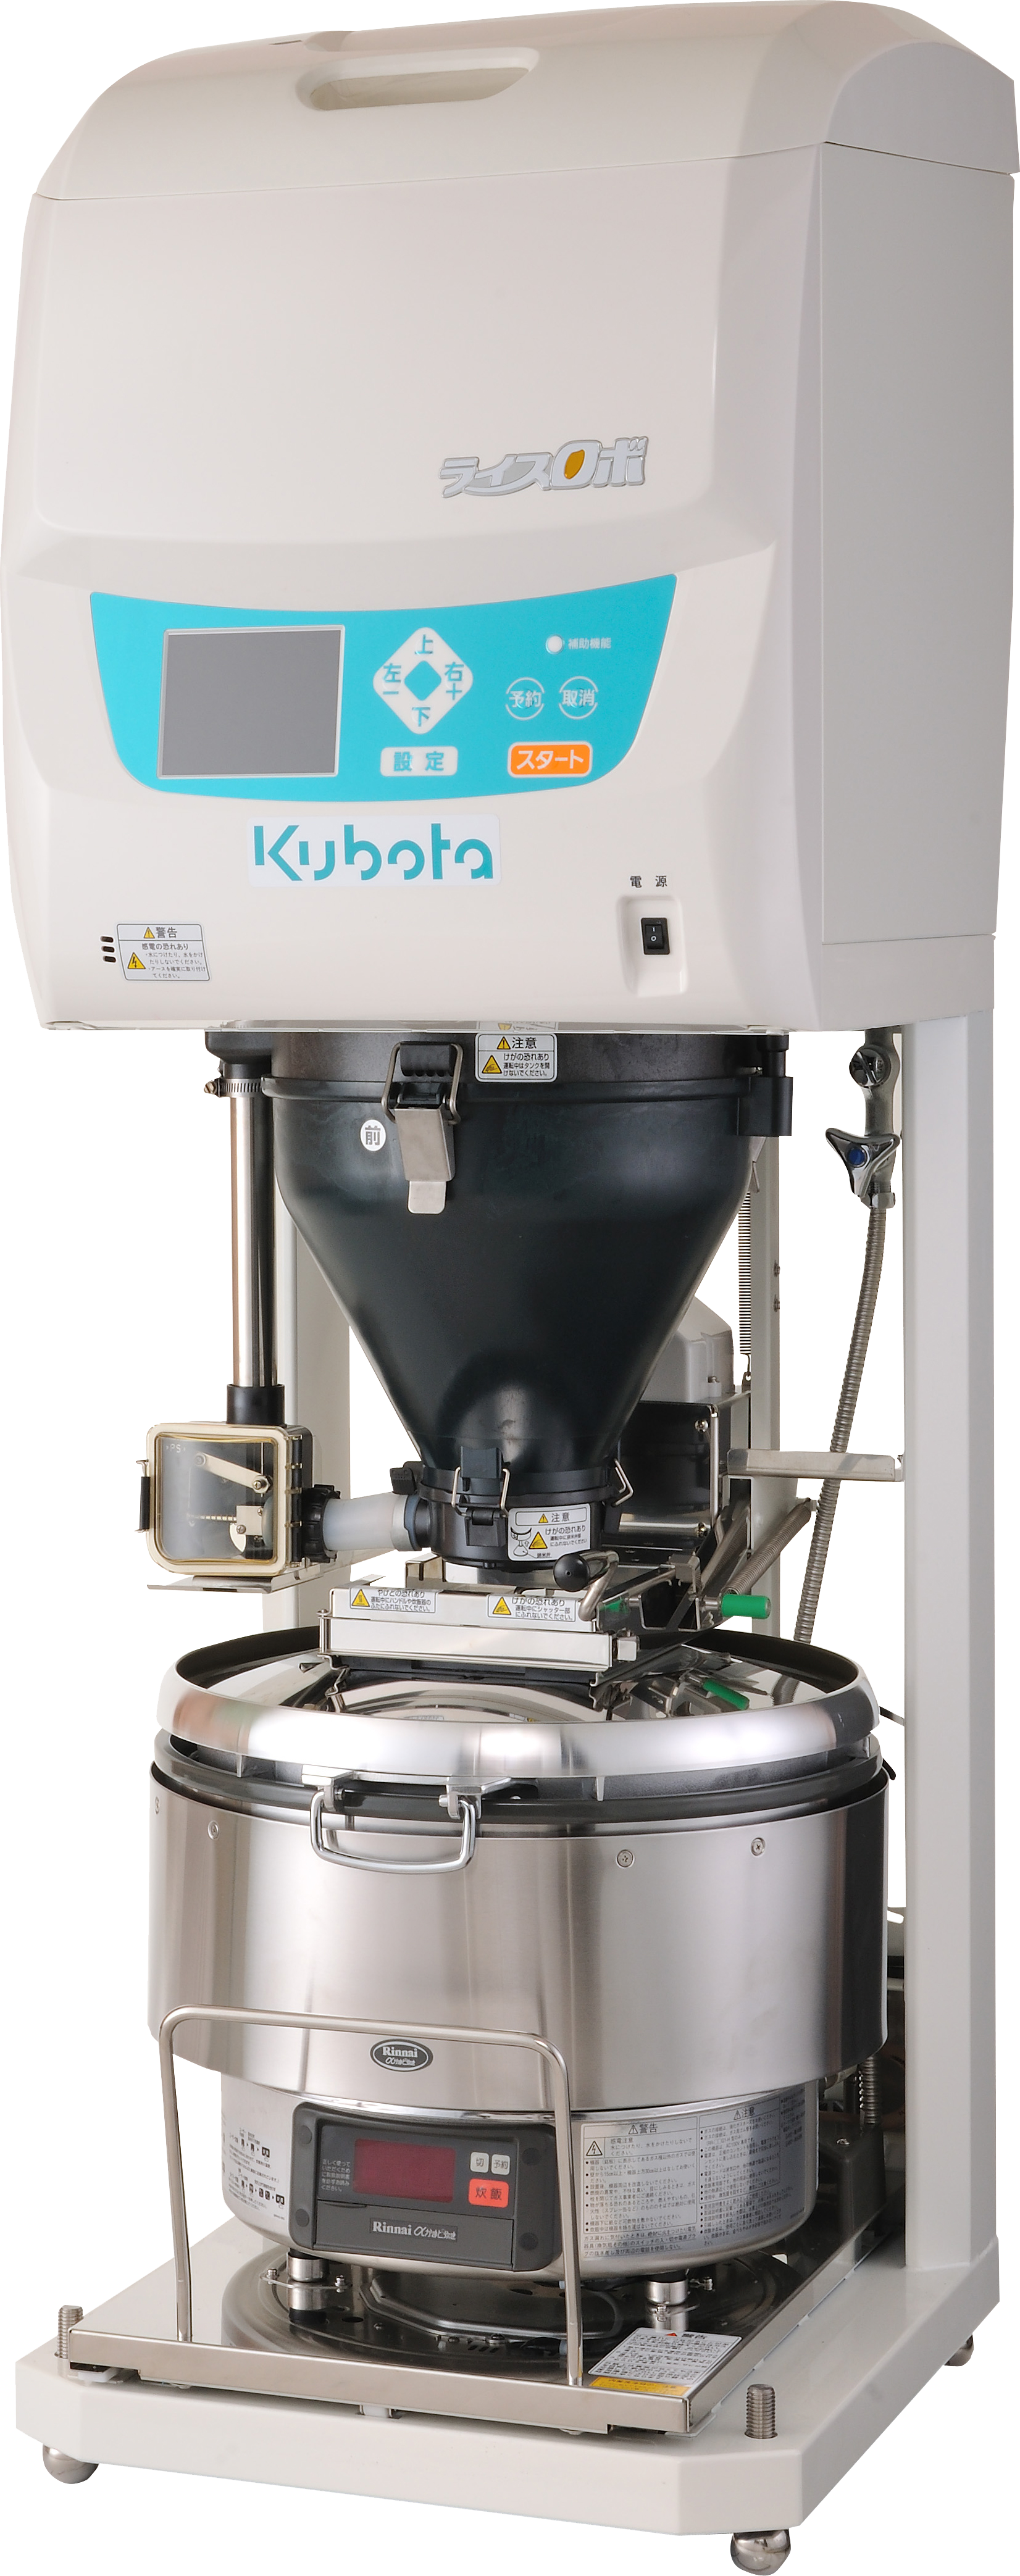 クボタ kubota ライスロボ KR902NA RR-50GS2 業務用 自動炊飯器  - 3